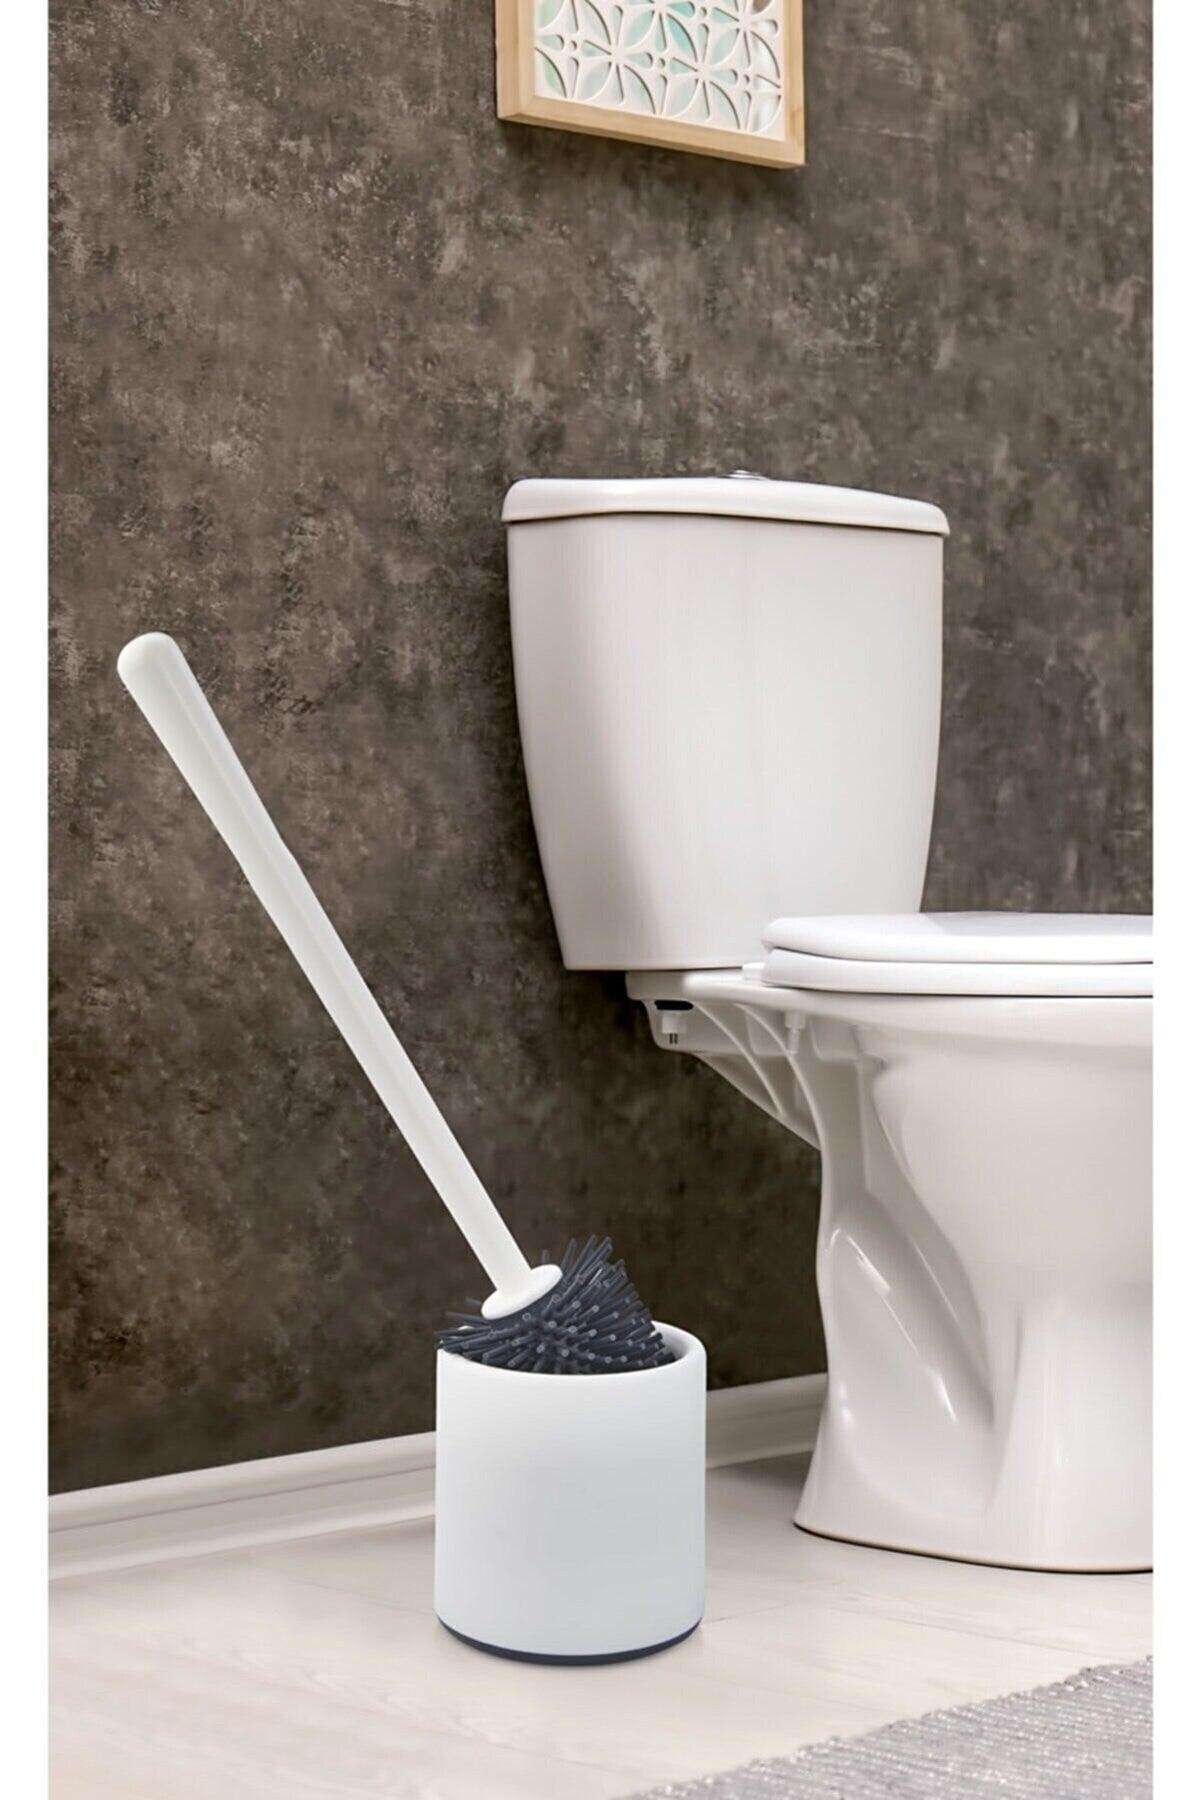 Silicone Wc Toilet Bath Brush Toilet Seat